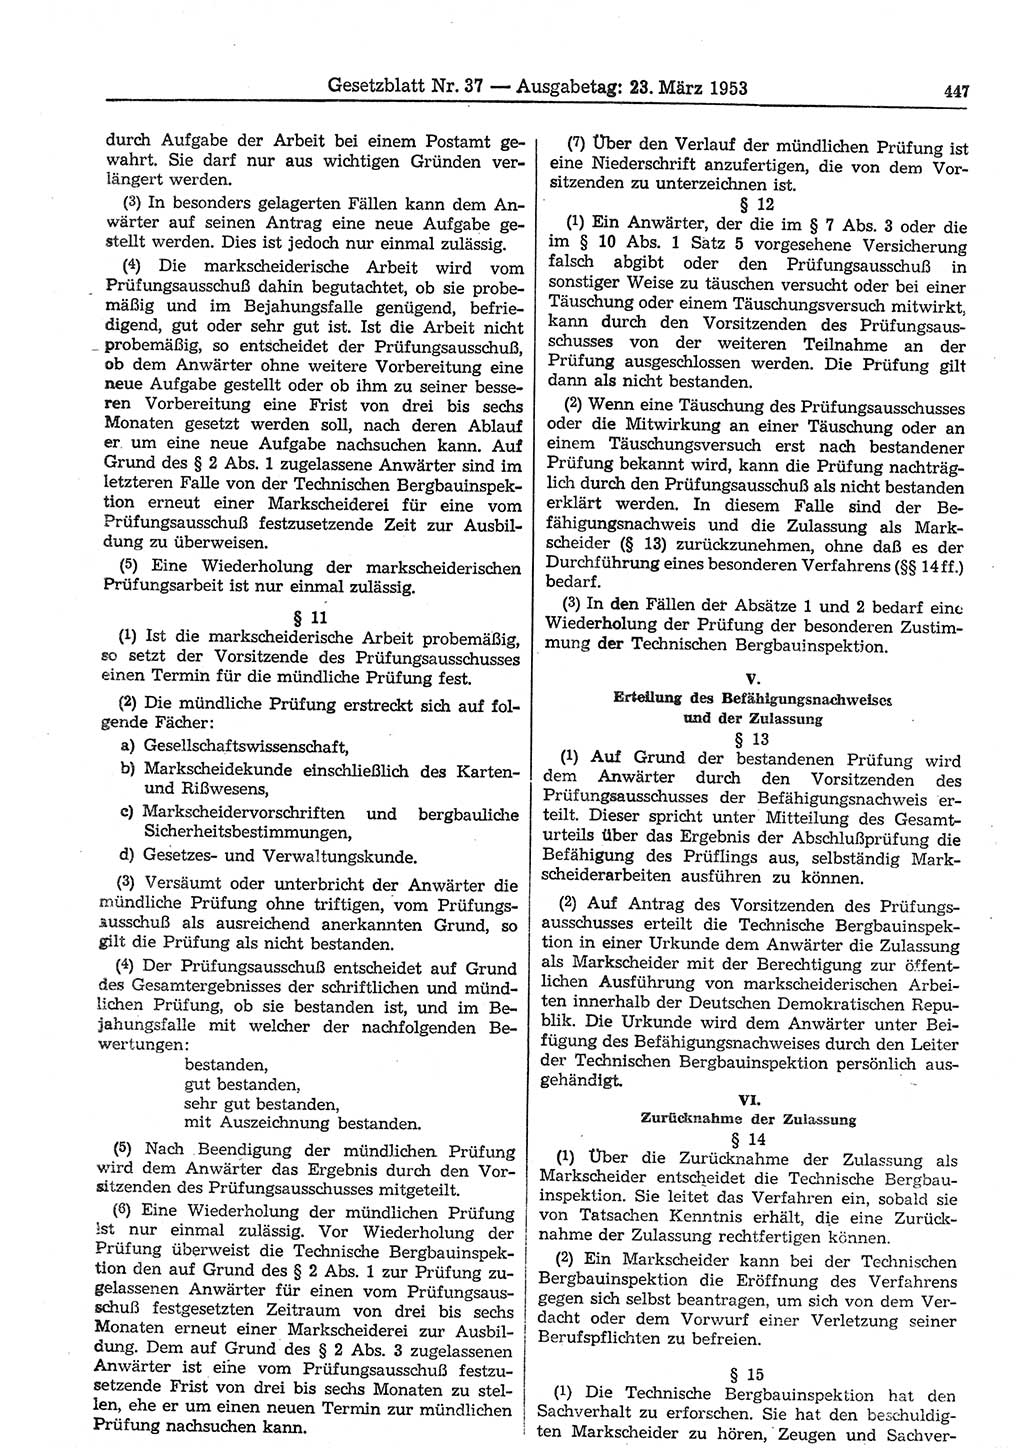 Gesetzblatt (GBl.) der Deutschen Demokratischen Republik (DDR) 1953, Seite 447 (GBl. DDR 1953, S. 447)